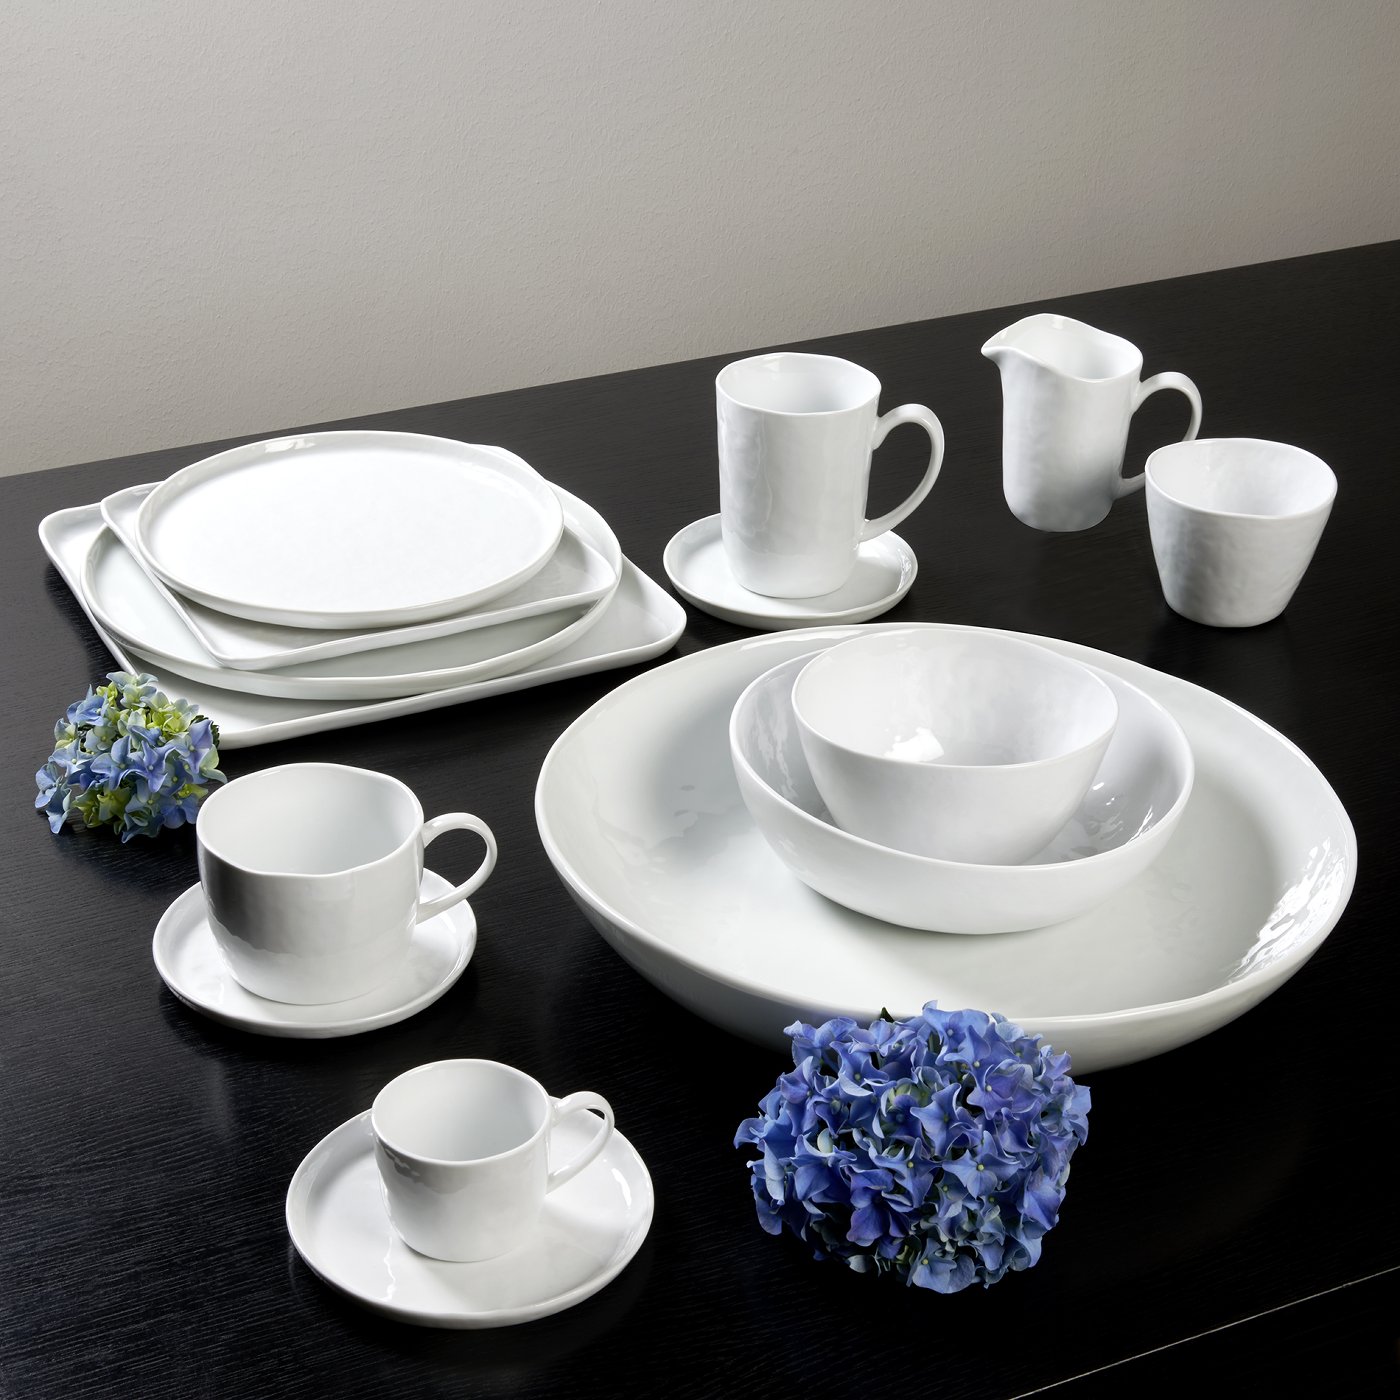 Piana bowl porcelain, white Dia 33 cm, H 6 cm